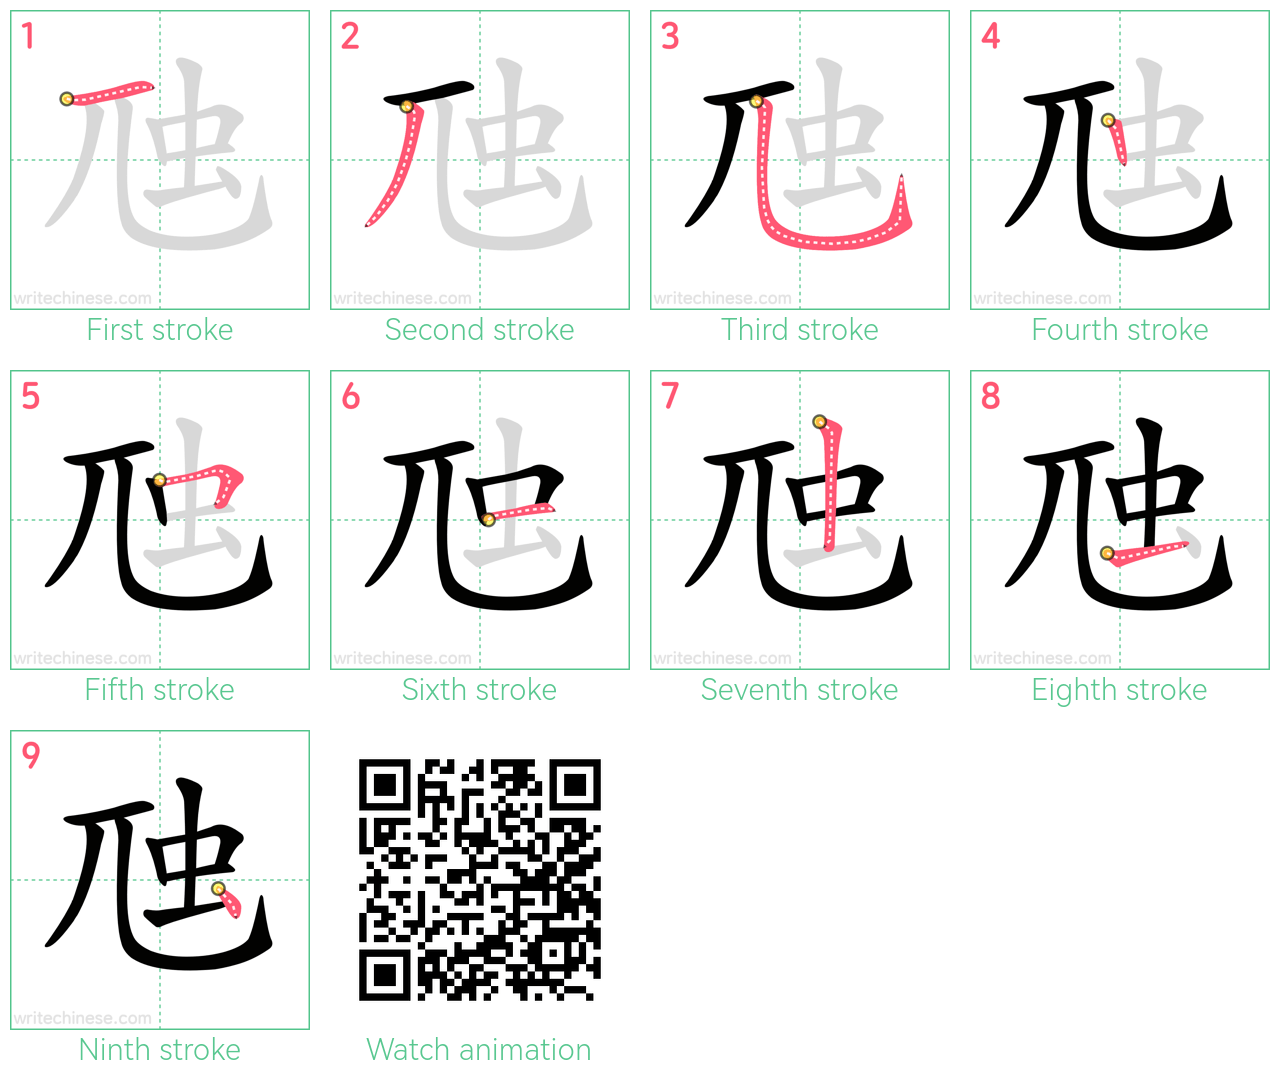 虺 step-by-step stroke order diagrams